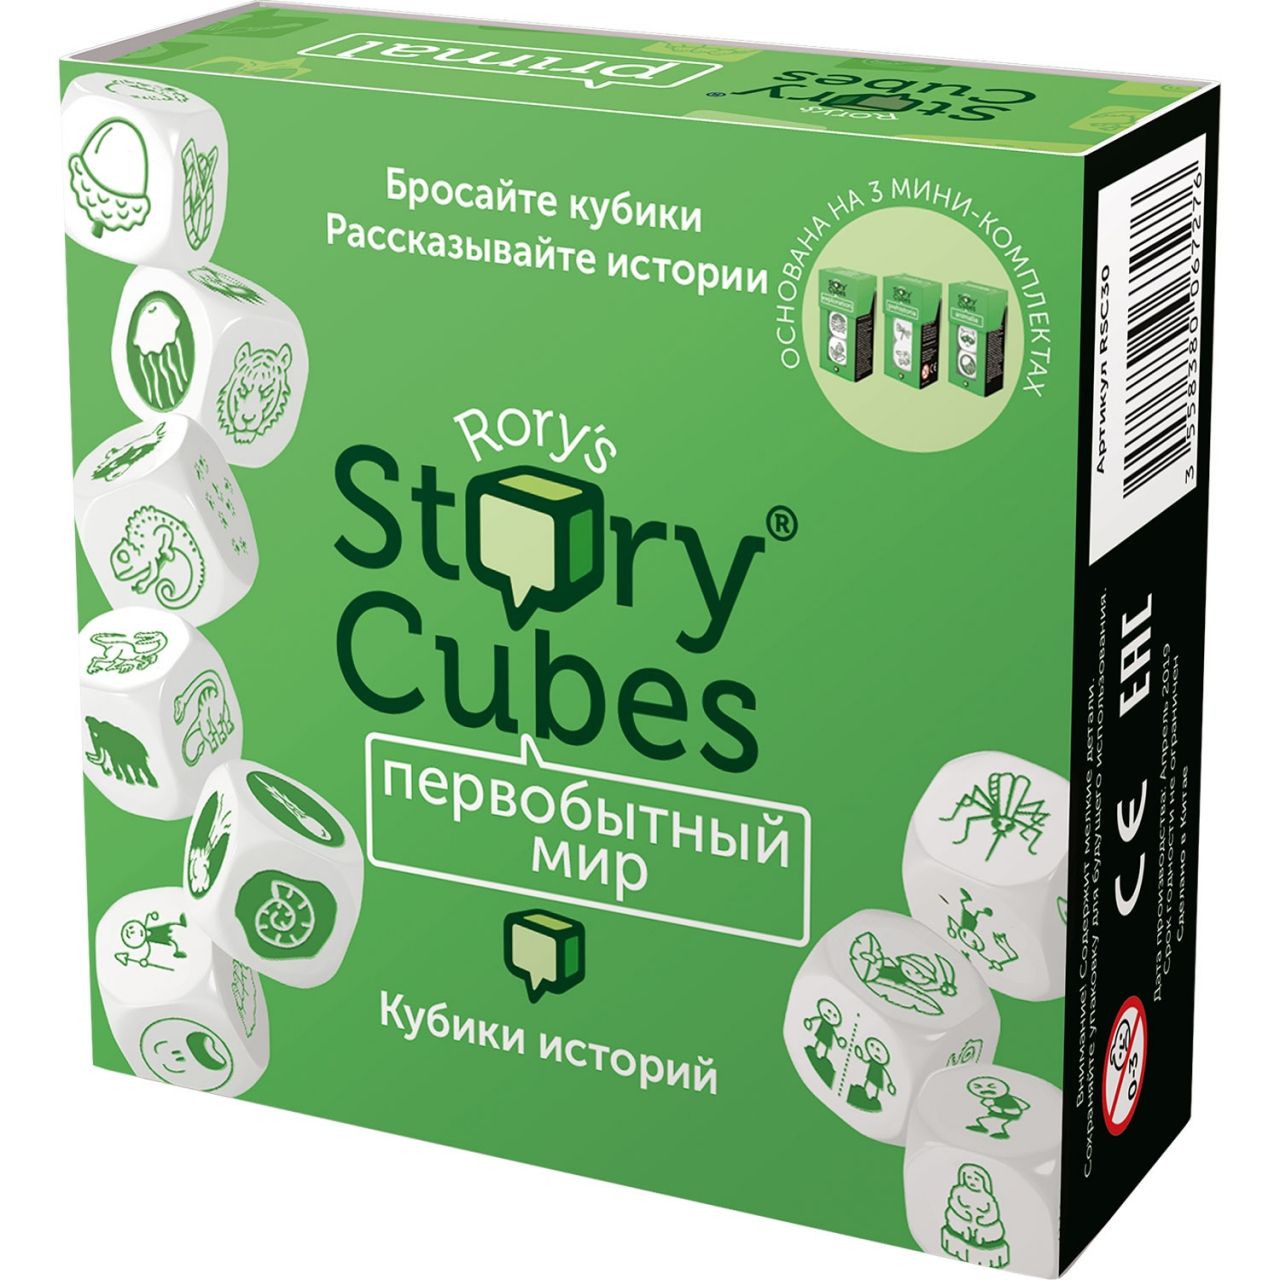 Настольная игра RORYS STORY CUBES RSC30 кубики историй Первобытный мир кубики историй первобытный мир